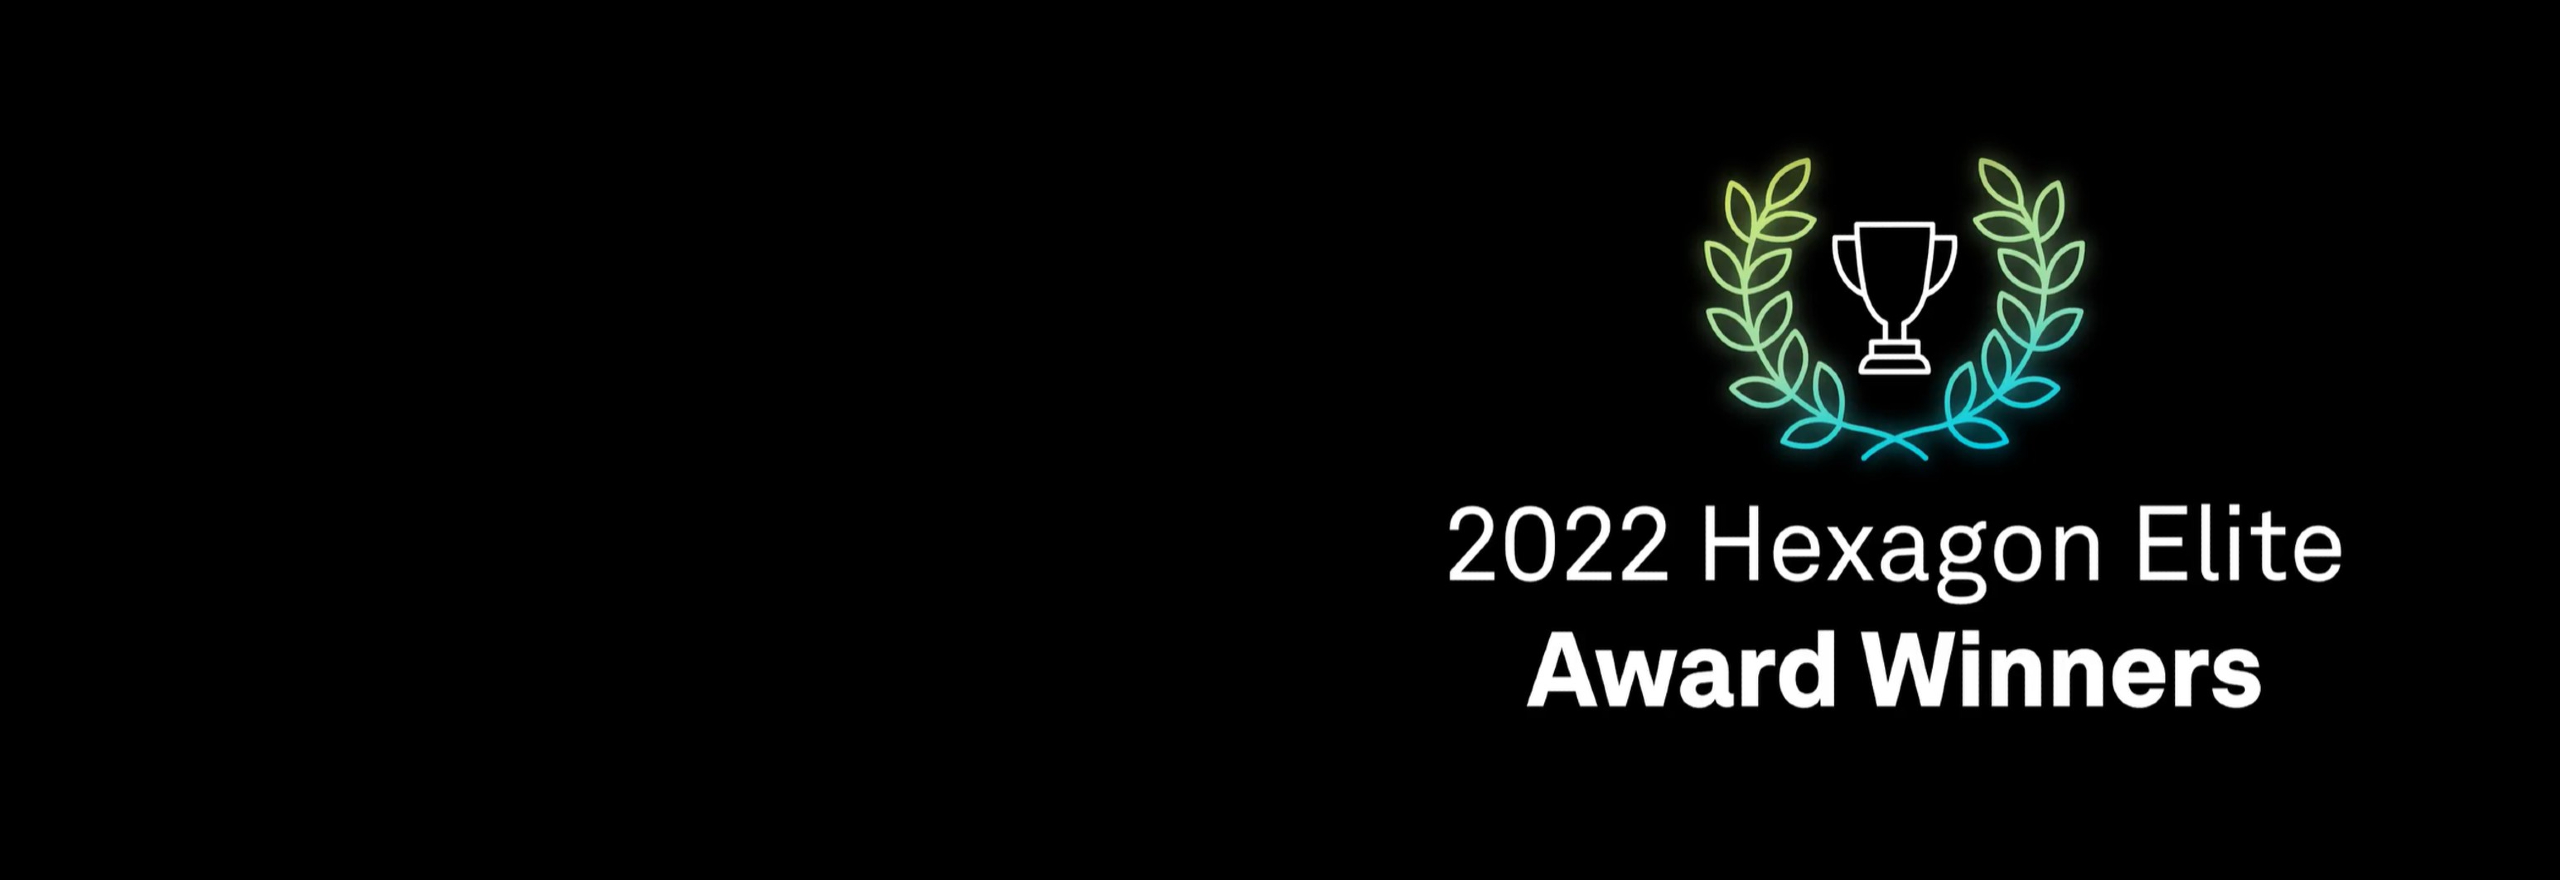 2022 Hexagon Elite Awards